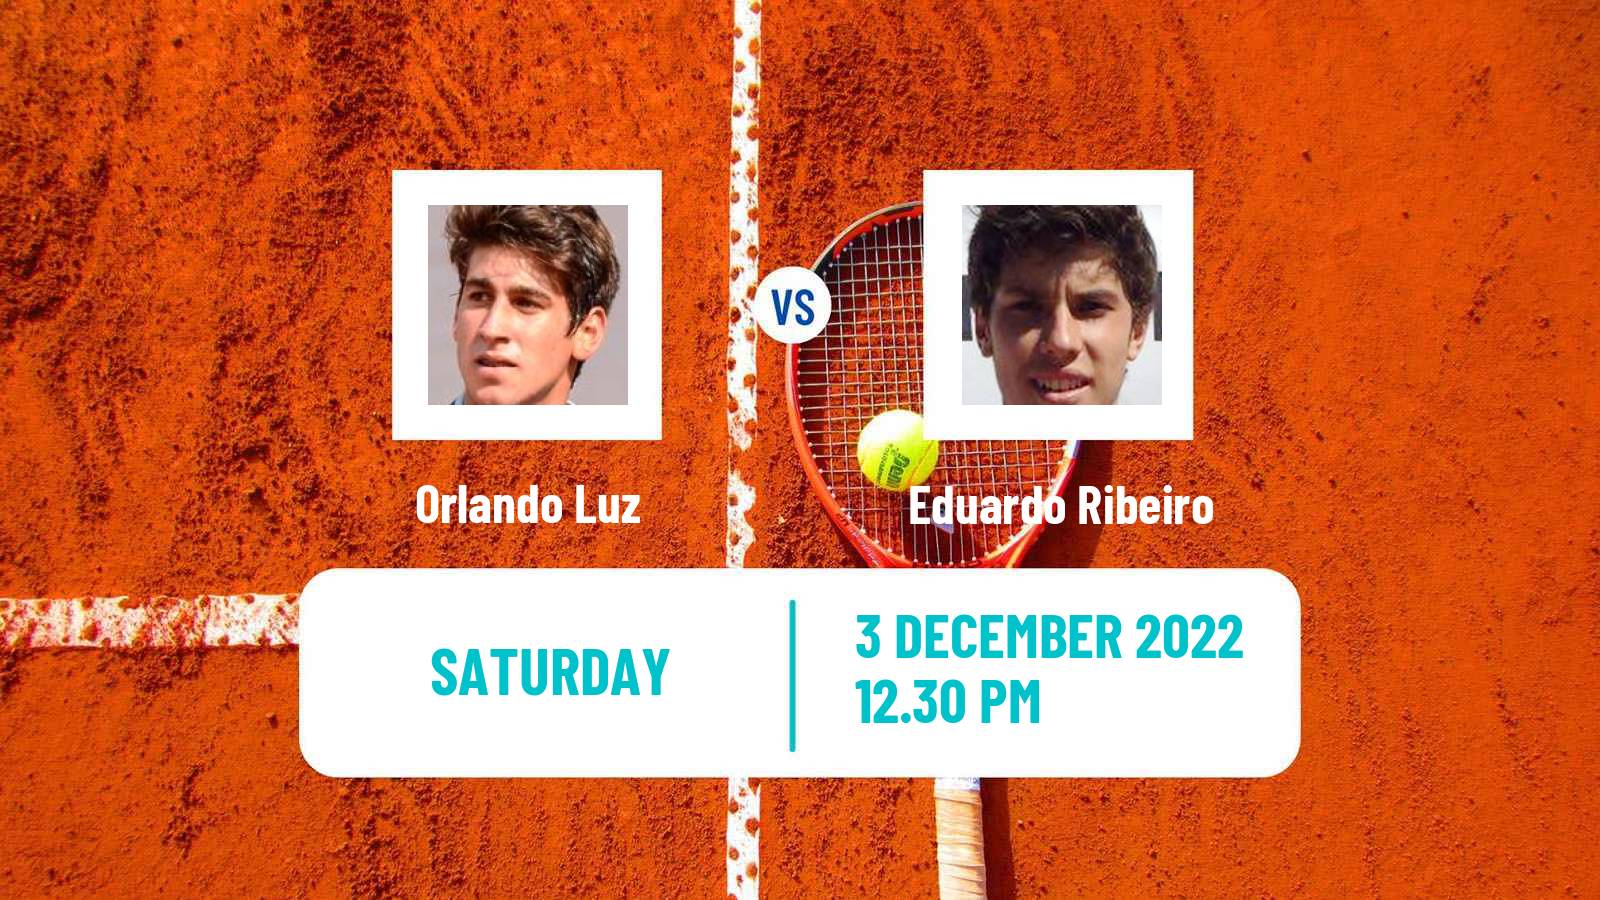 Tennis ITF Tournaments Orlando Luz - Eduardo Ribeiro